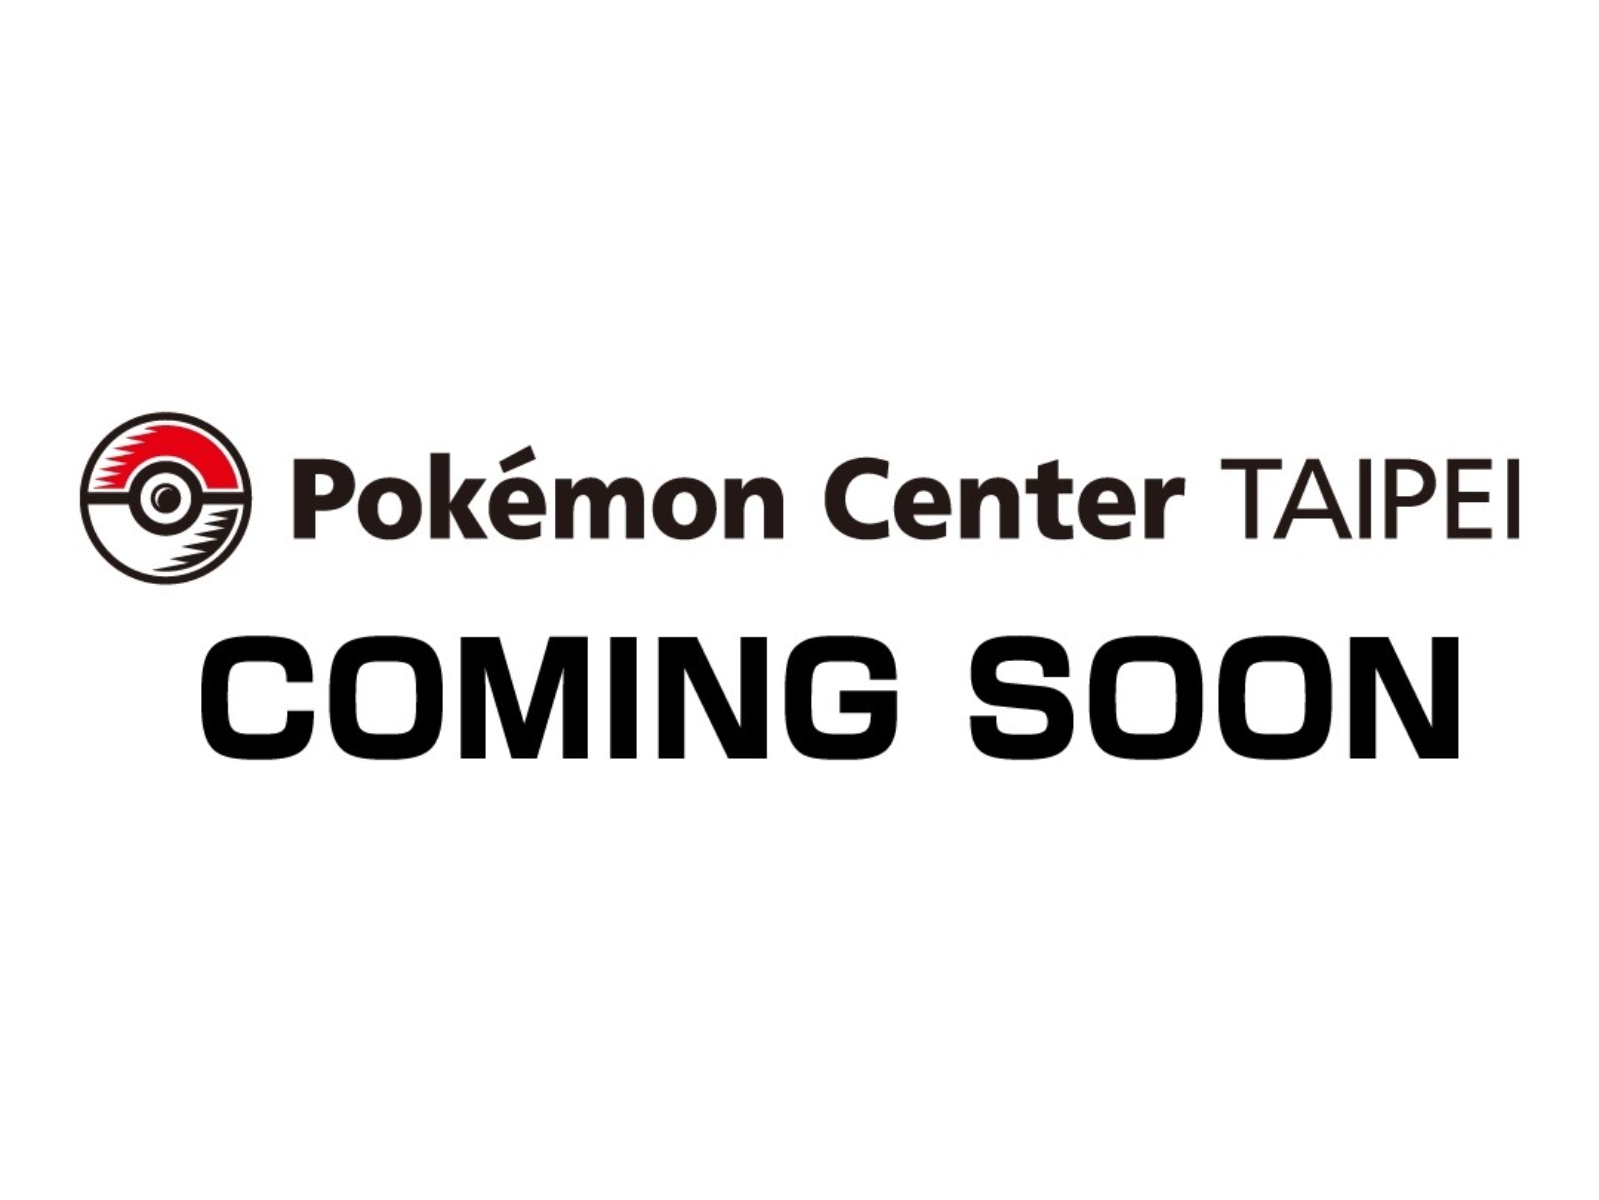 台灣首間「寶可夢中心 Pokemon Center 」將於 12 月台北正式開幕，訓練家們該出動啦！